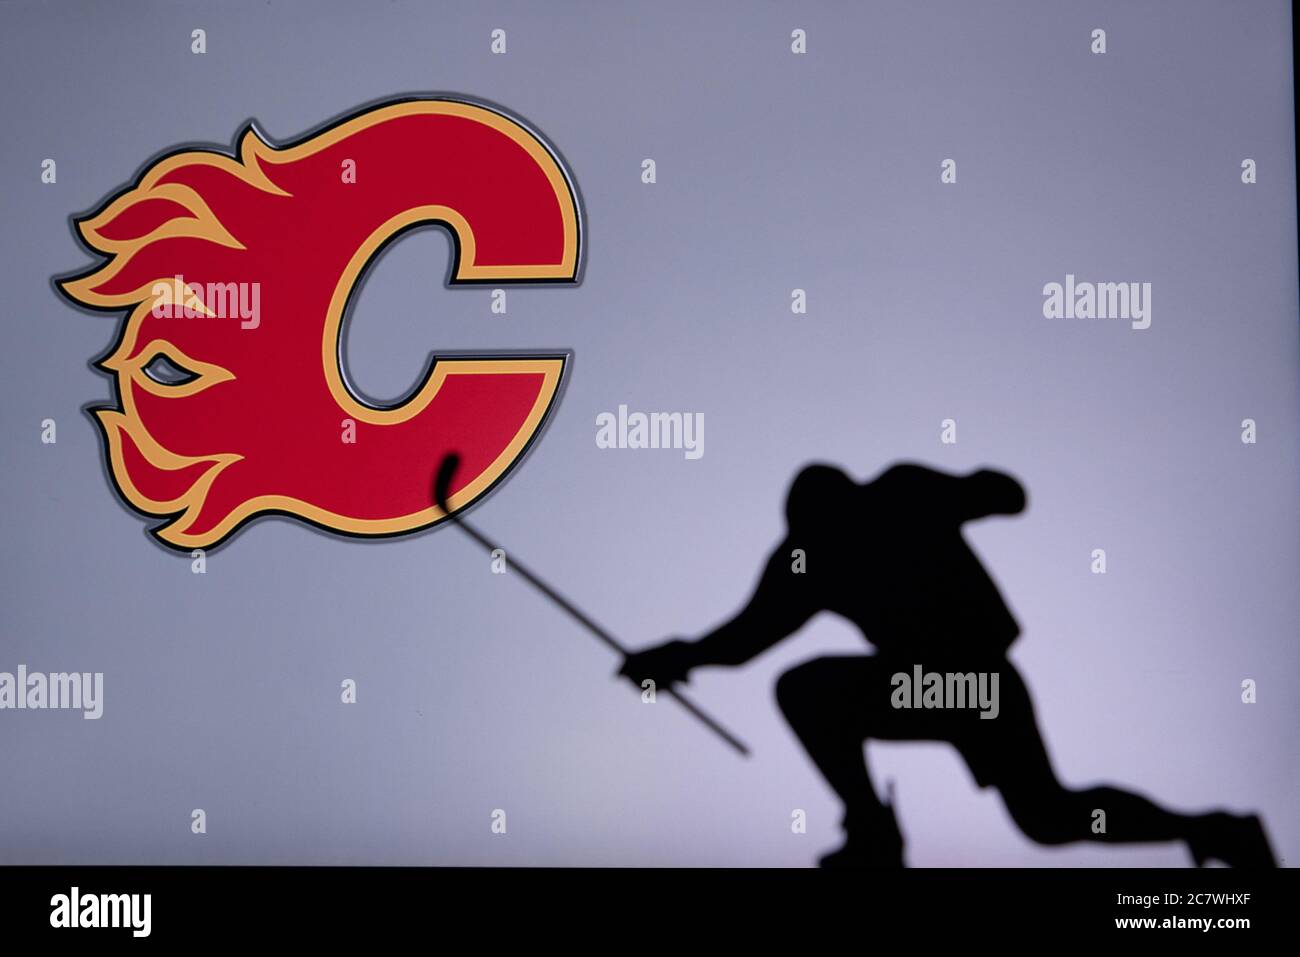 Calgary flames, Calgary, Team photos